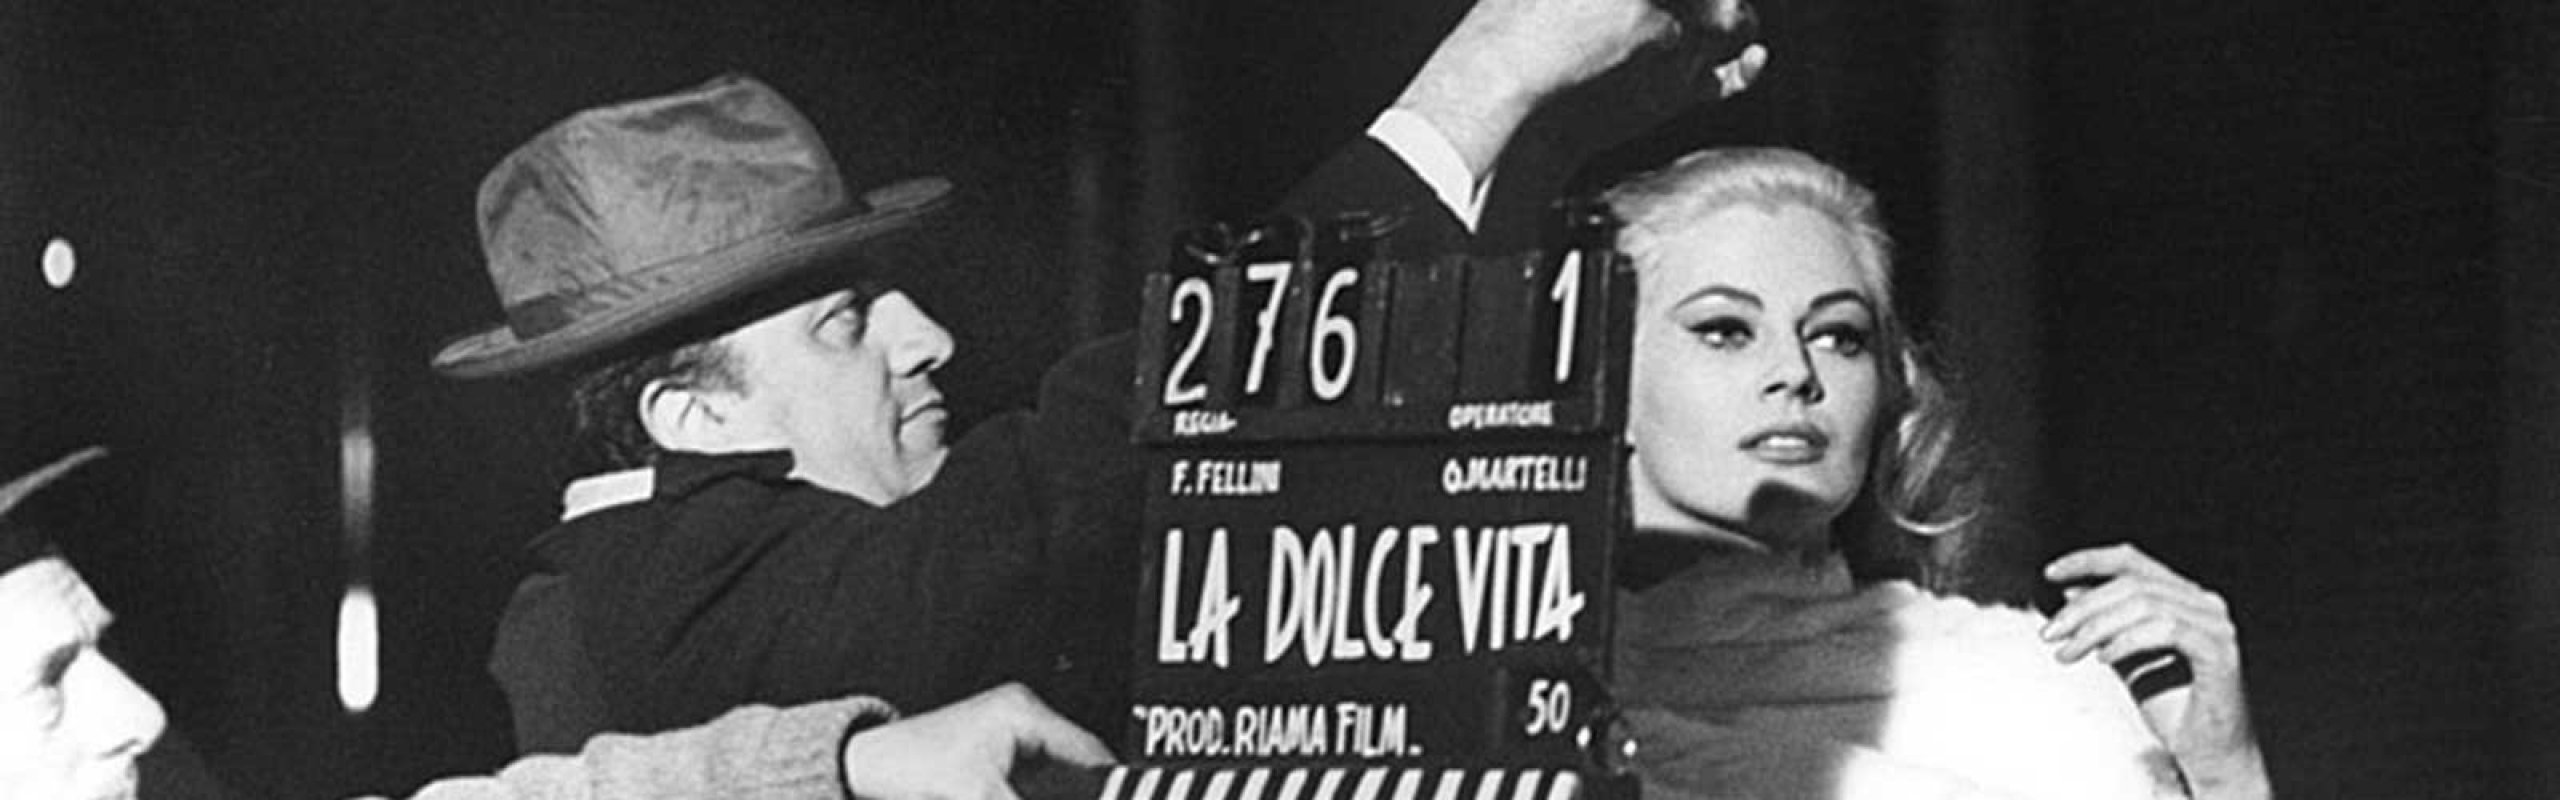 Un critico riflette sul cinema italiano